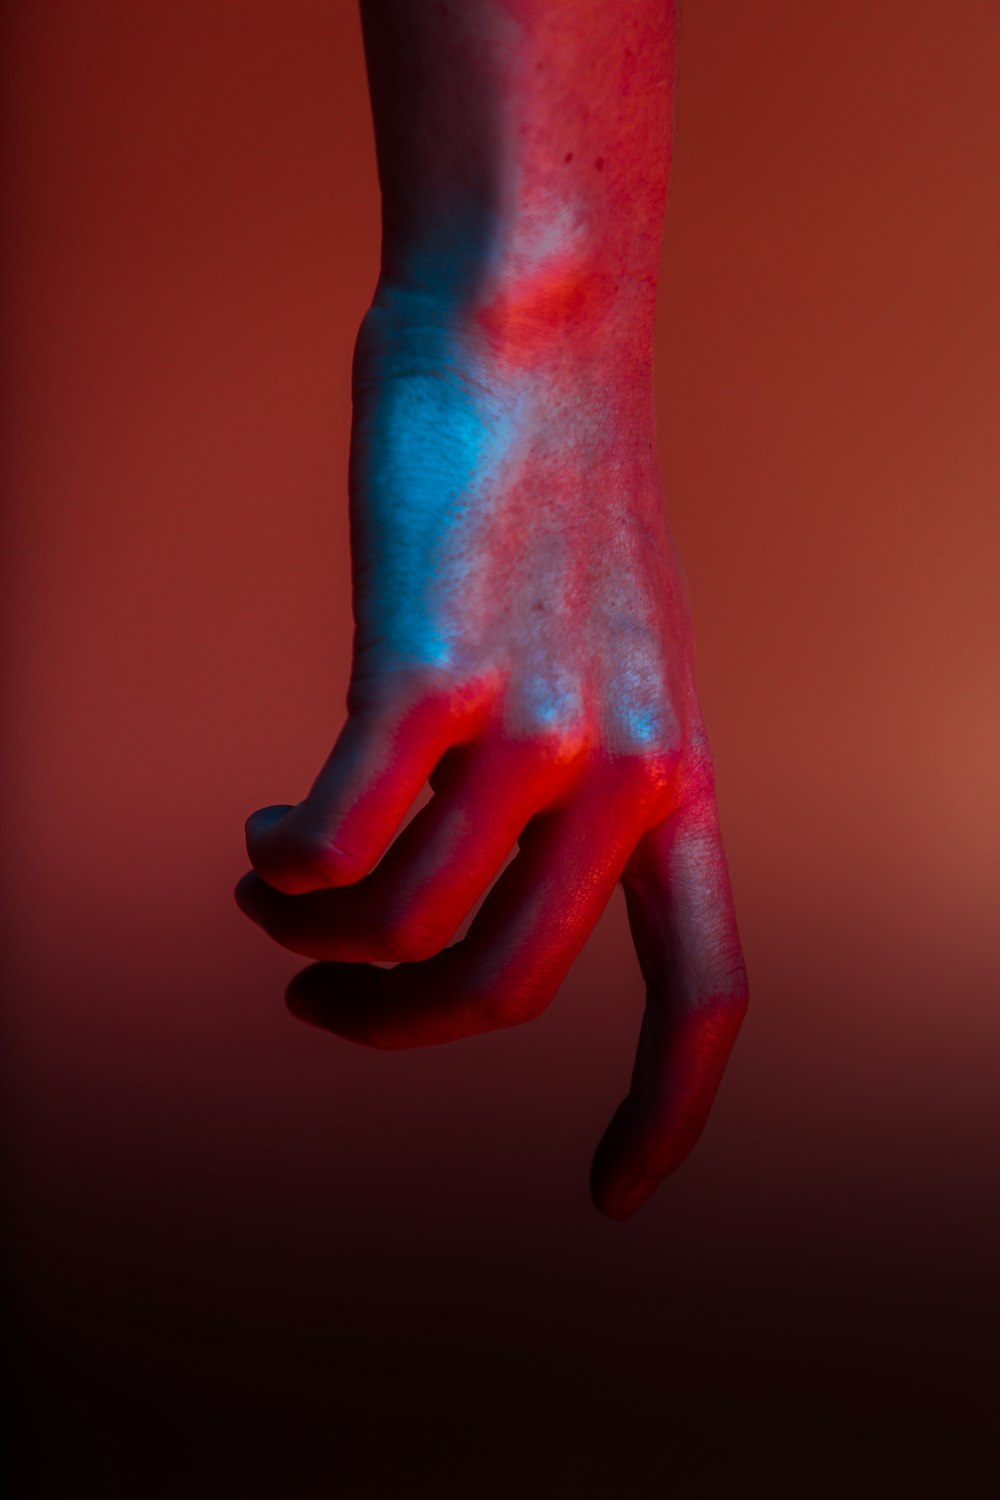 Fotografia de foco raso da mão com tinta vermelha